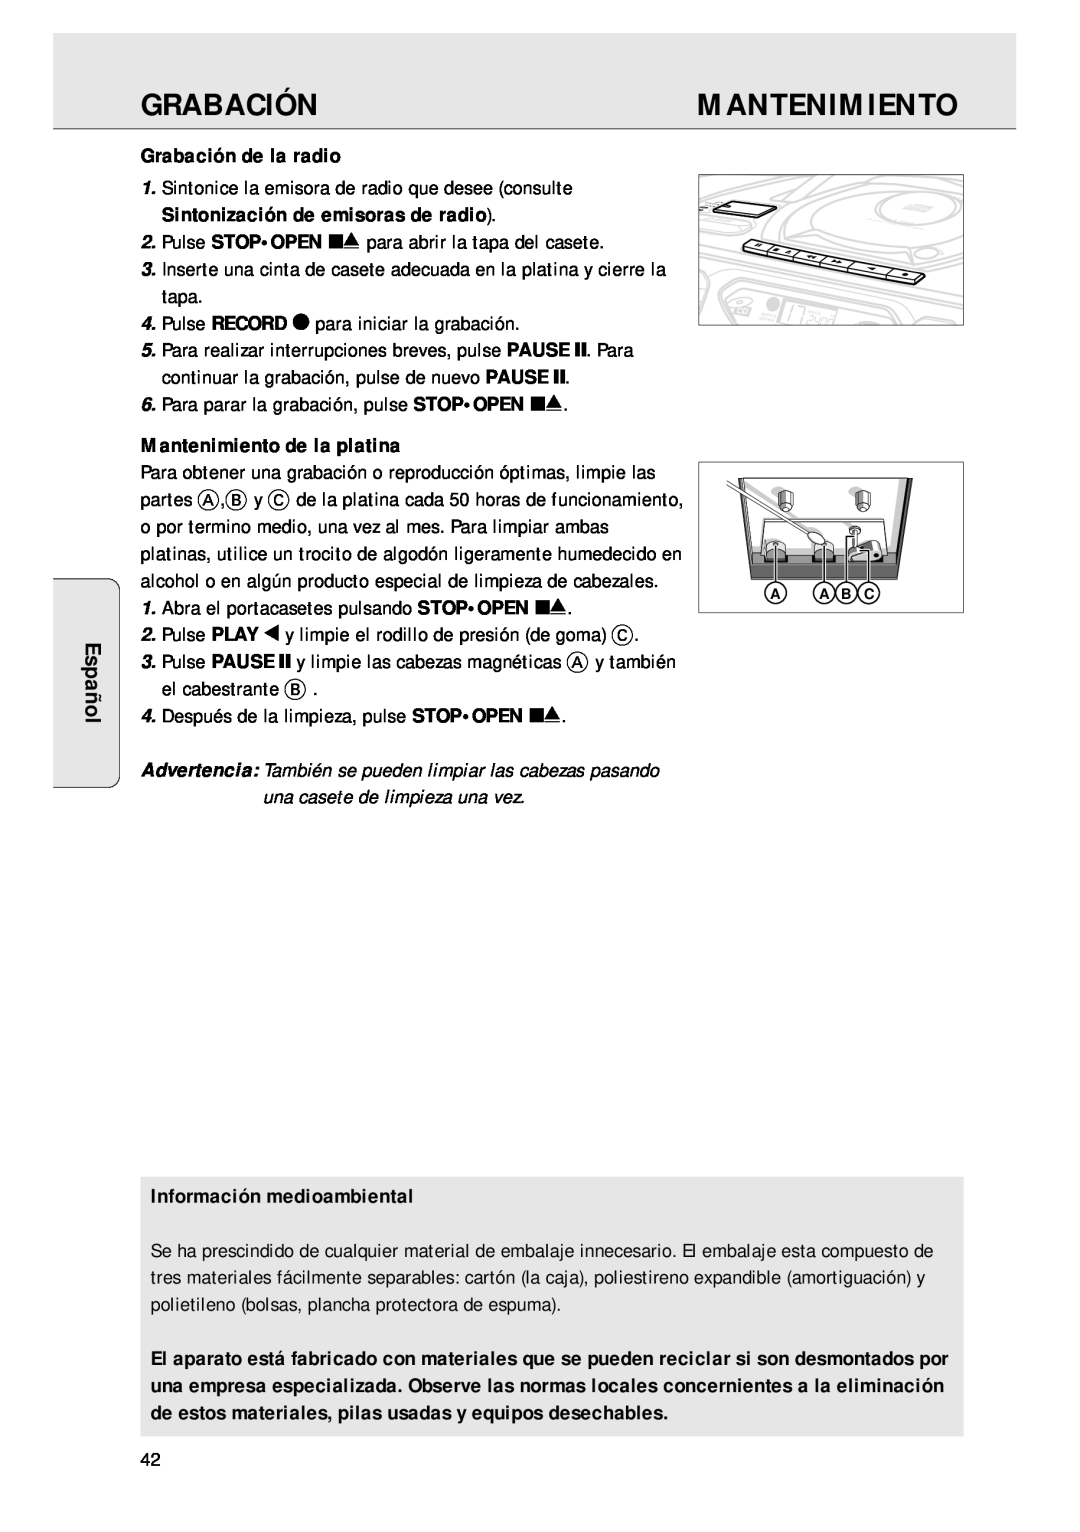 Magnavox AZ 1045 manual Español, Grabación de la radio, Mantenimiento de la platina, Información medioambiental 